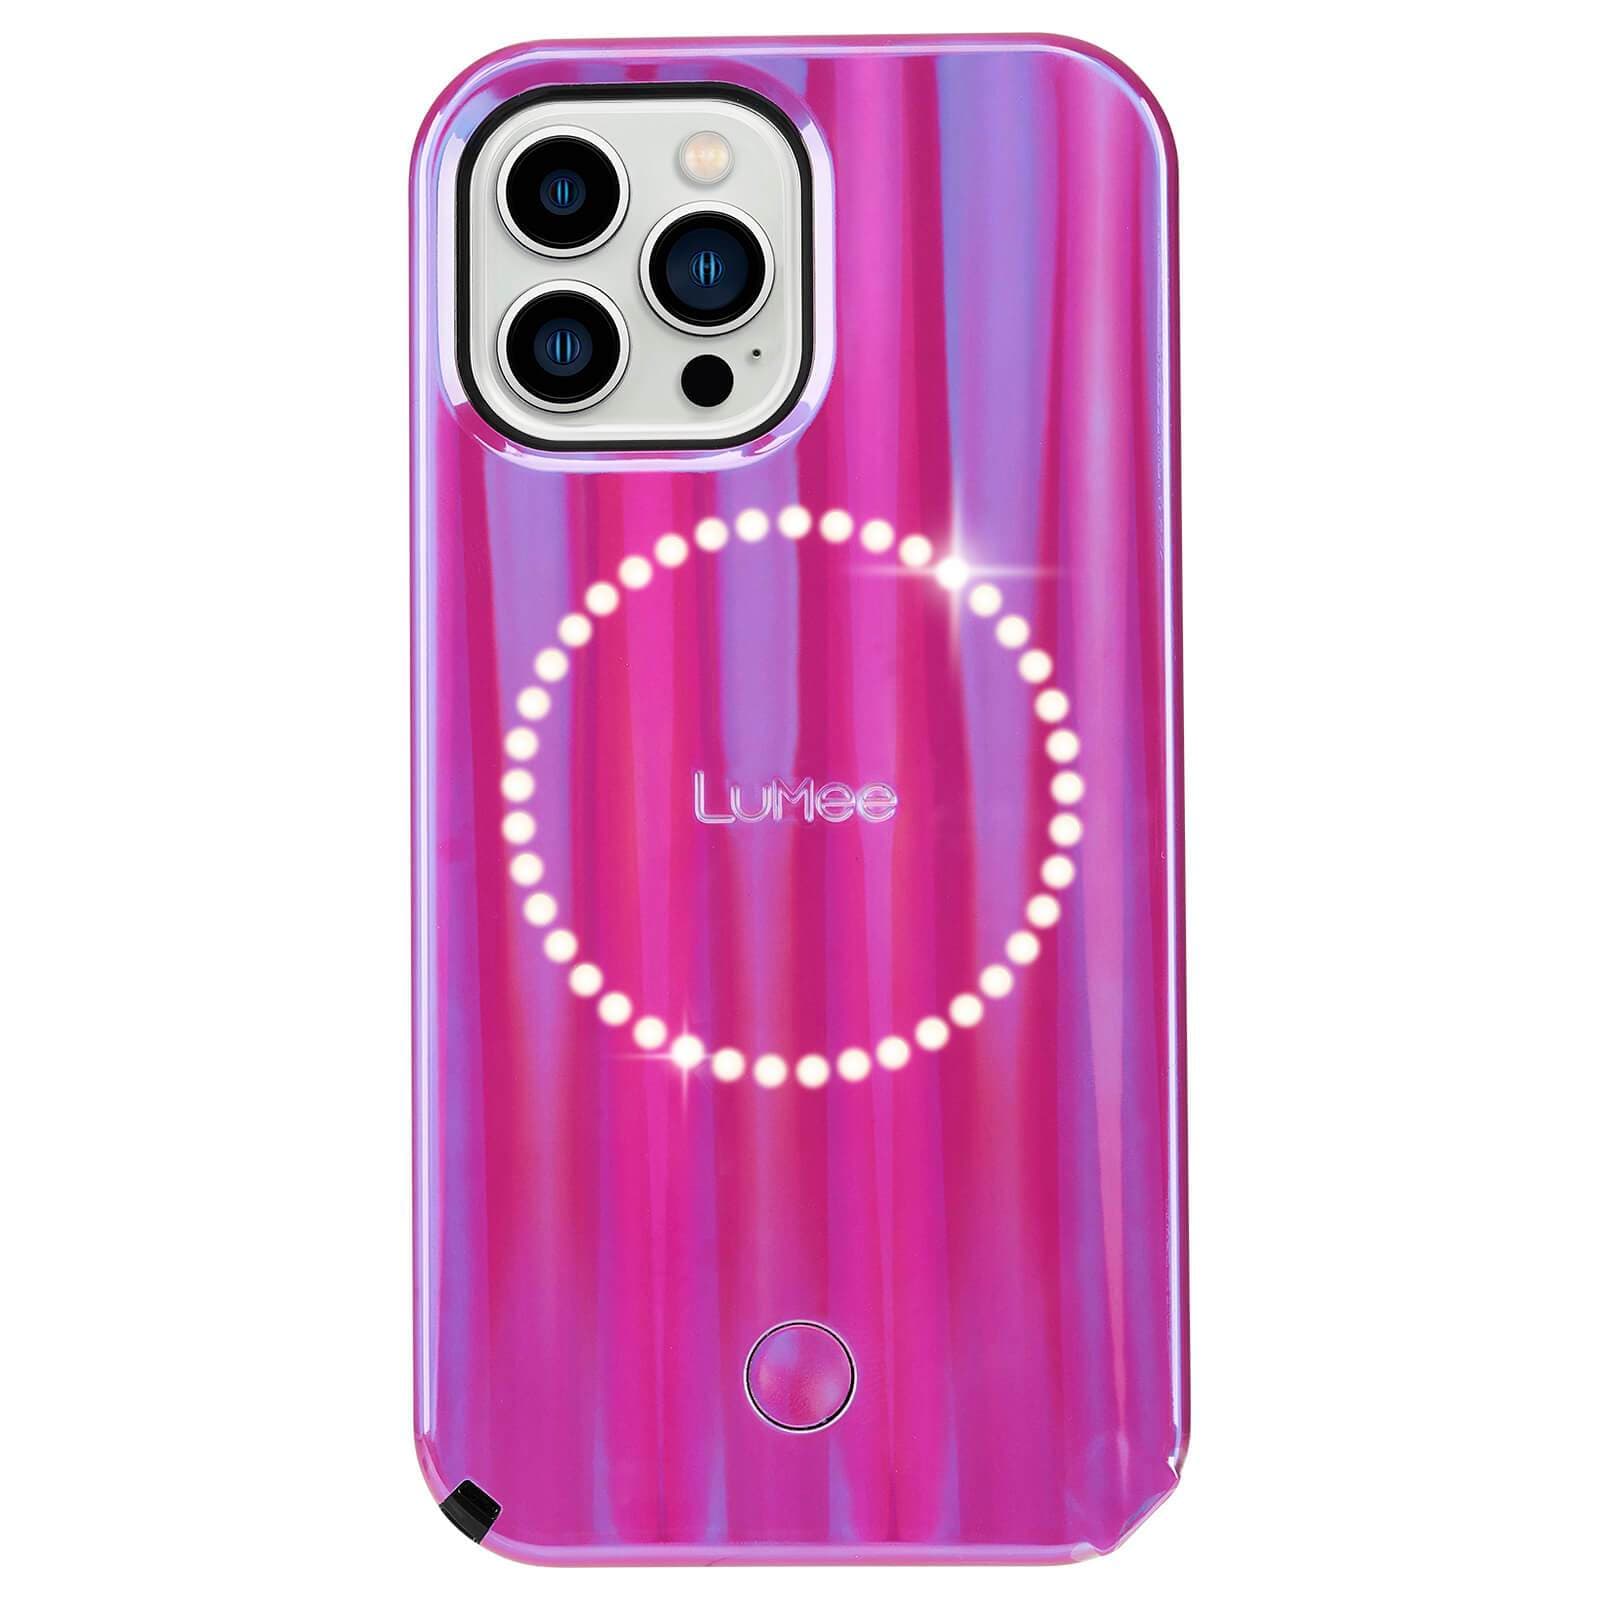 Voordracht Ambient Voor een dagje uit Halo Hot Pink Voltage - iPhone 13 Pro Phone Case | Case-Mate